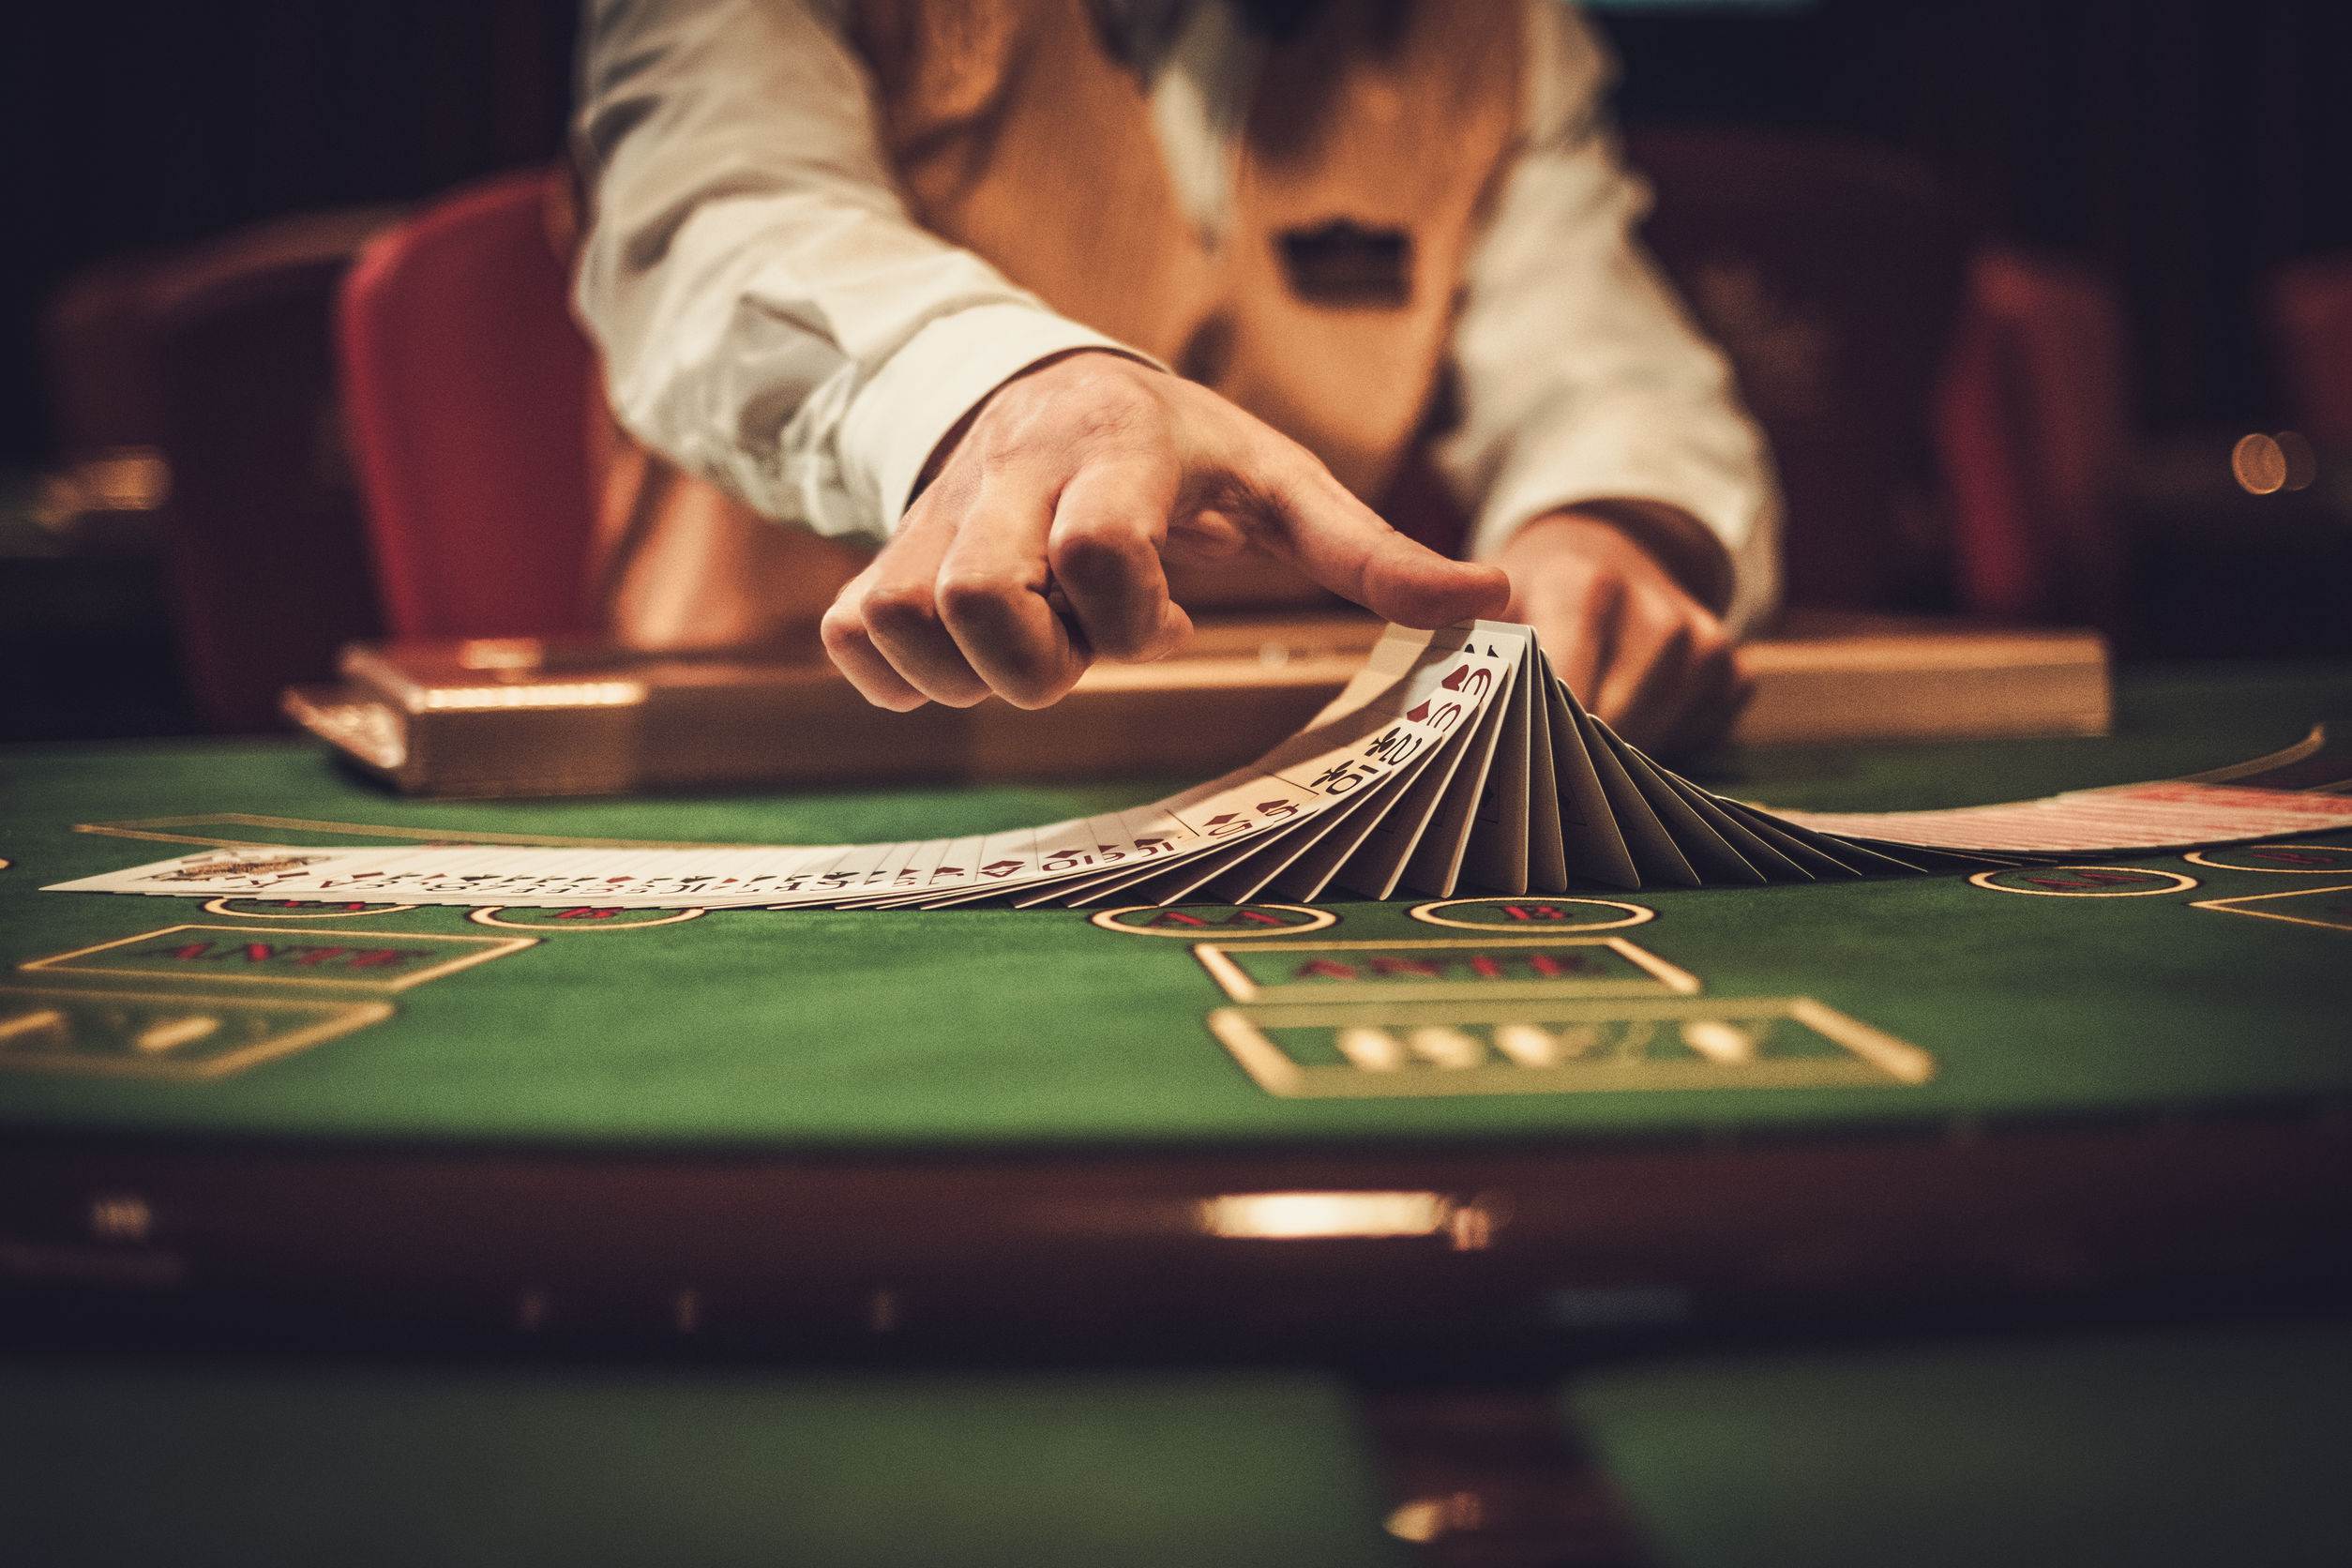 General tips for winning poker games